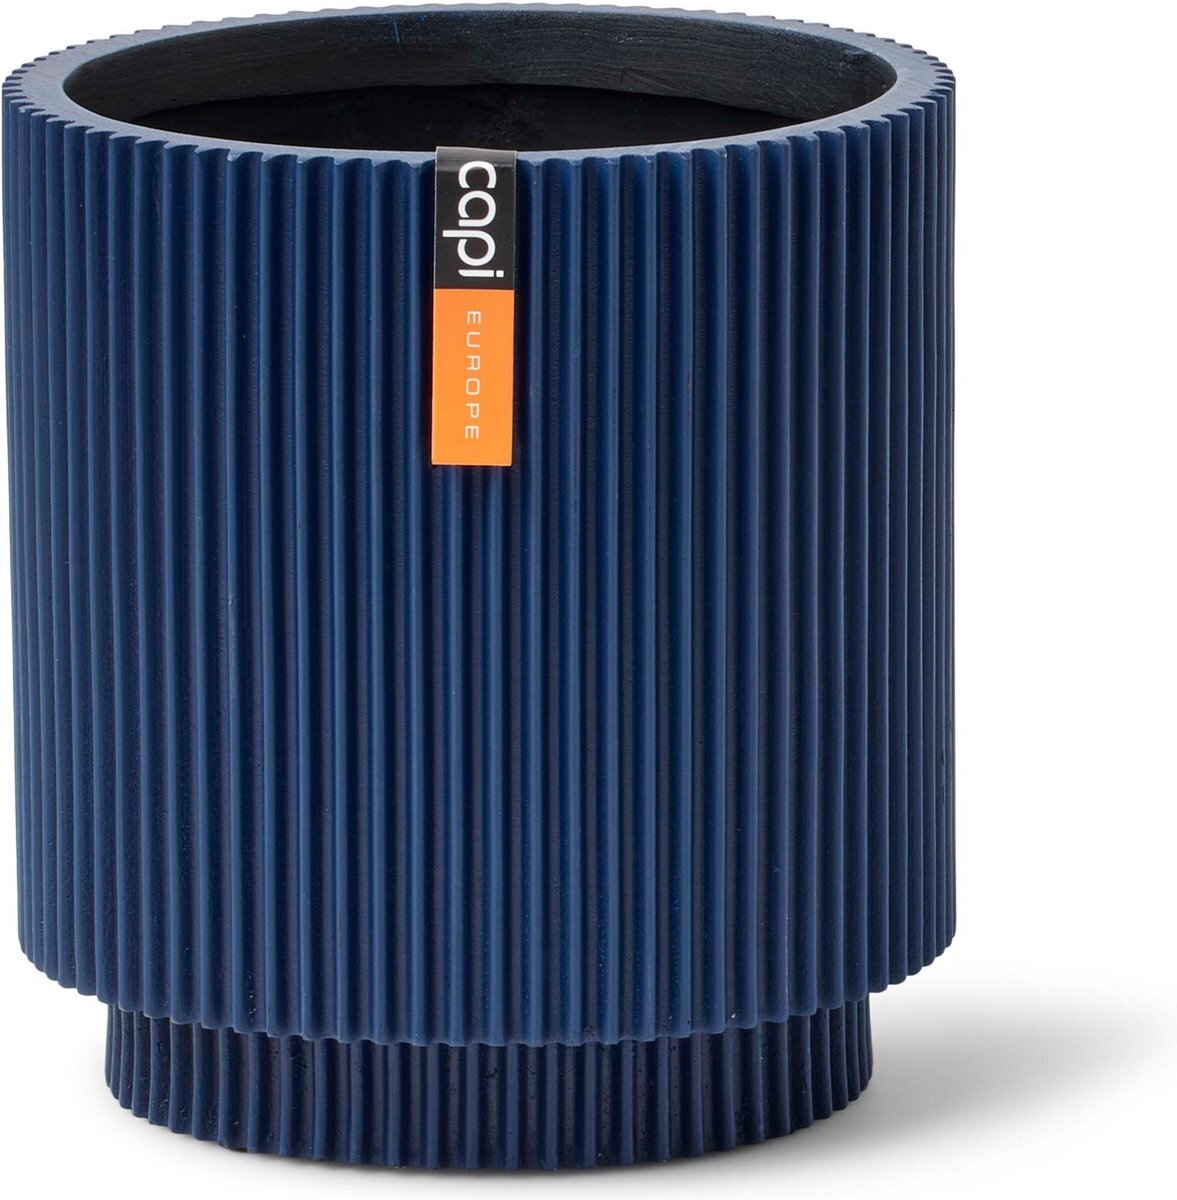 Capi Europe - Vaas cilinder Groove - 15x17 - Donkerblauw - Bloempot voor binnen - BGVDB313